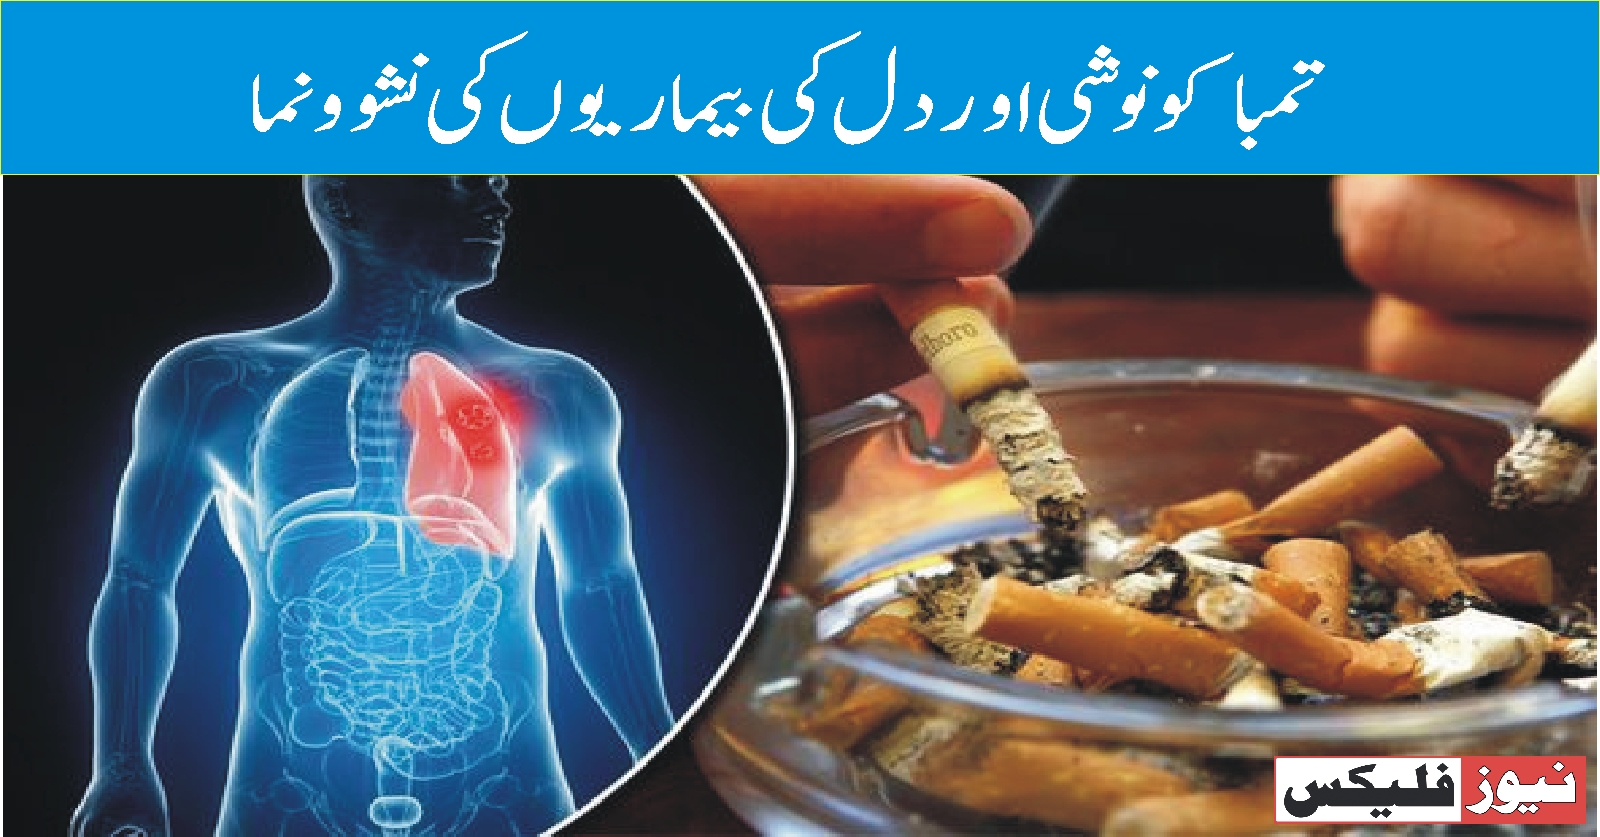 تمباکو نوشی اور دل کی بیماریوں کی نشوونما